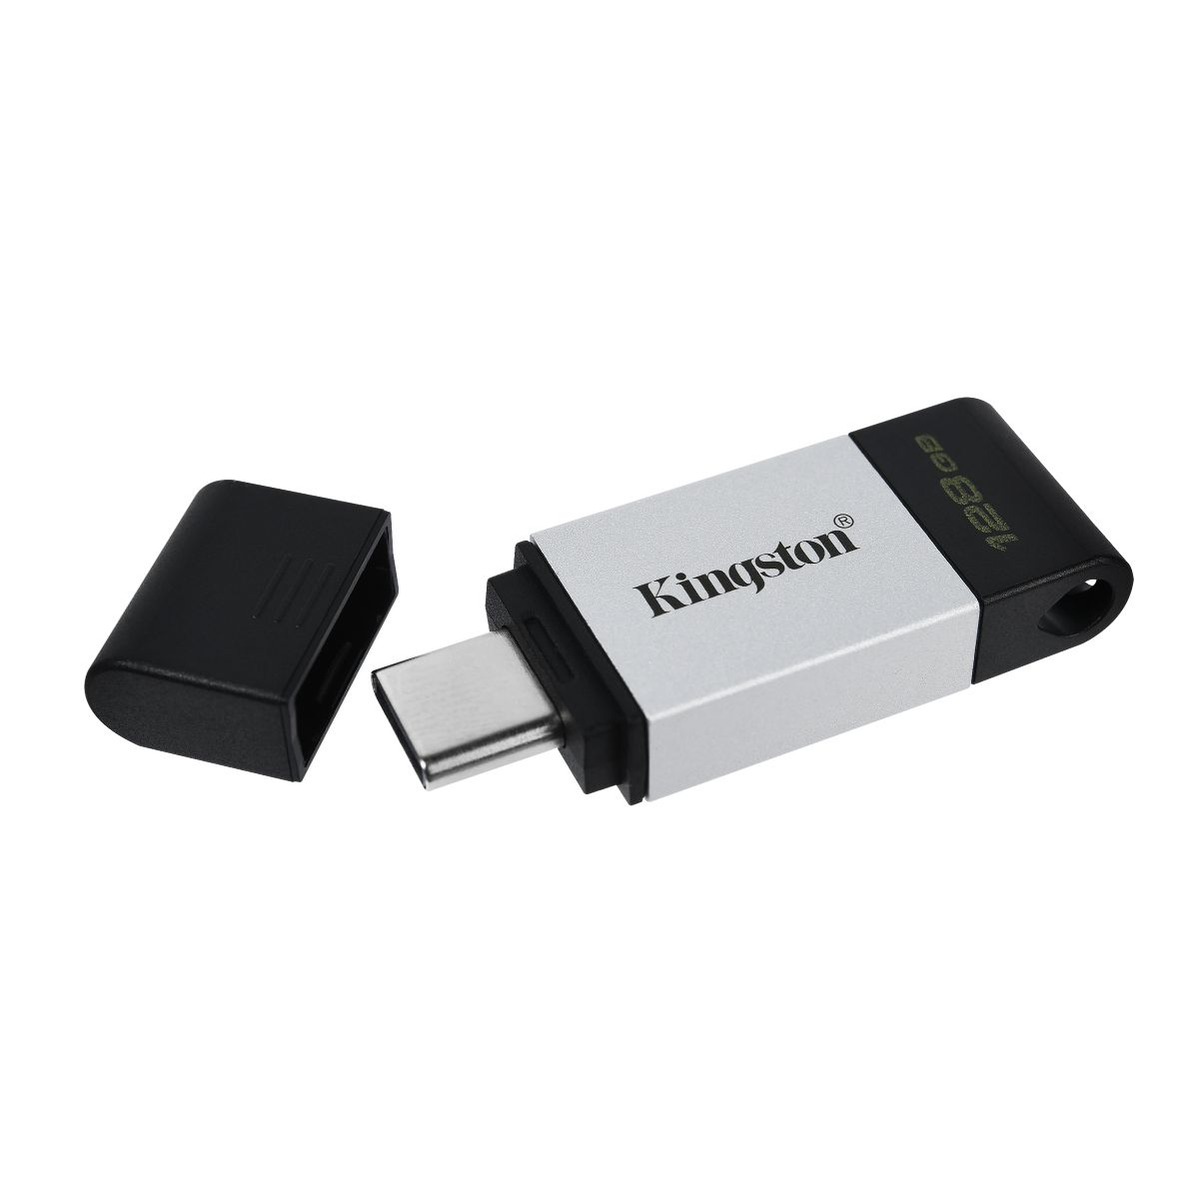 KINGSTON 128 GB) (Schwarz, DT80/128GB Stick USB